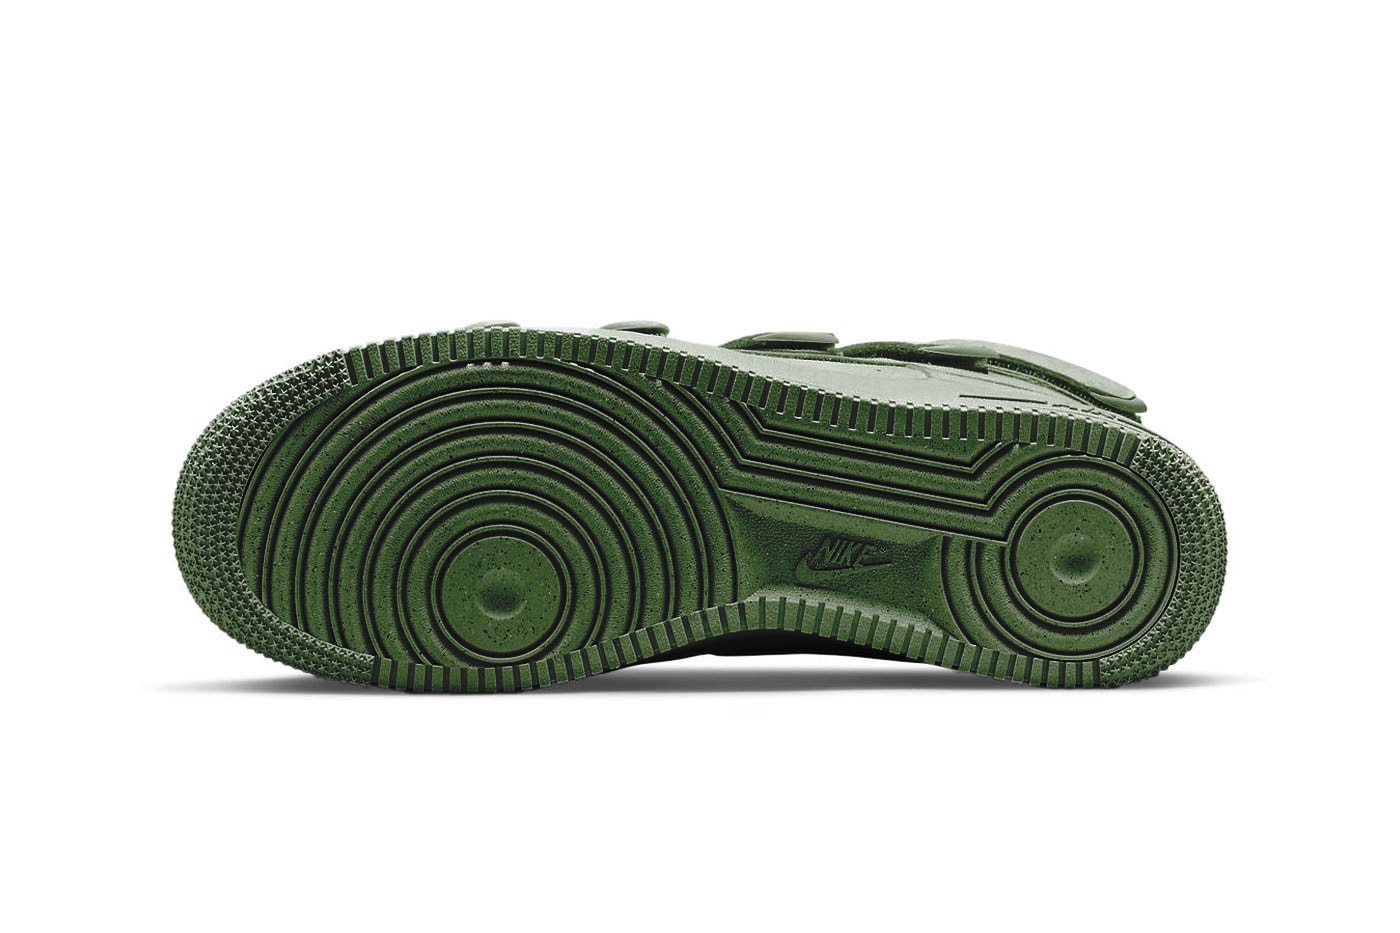 ビリー・アイリッシュ x ナイキエアフォース 1 ハイ “セコイア” の公式ビジュアルをチェック Take an Official Look at the Billie Eilish x Nike Air Force 1 High "Sequoia" DM7926-300 green af1 velcro eco friendly